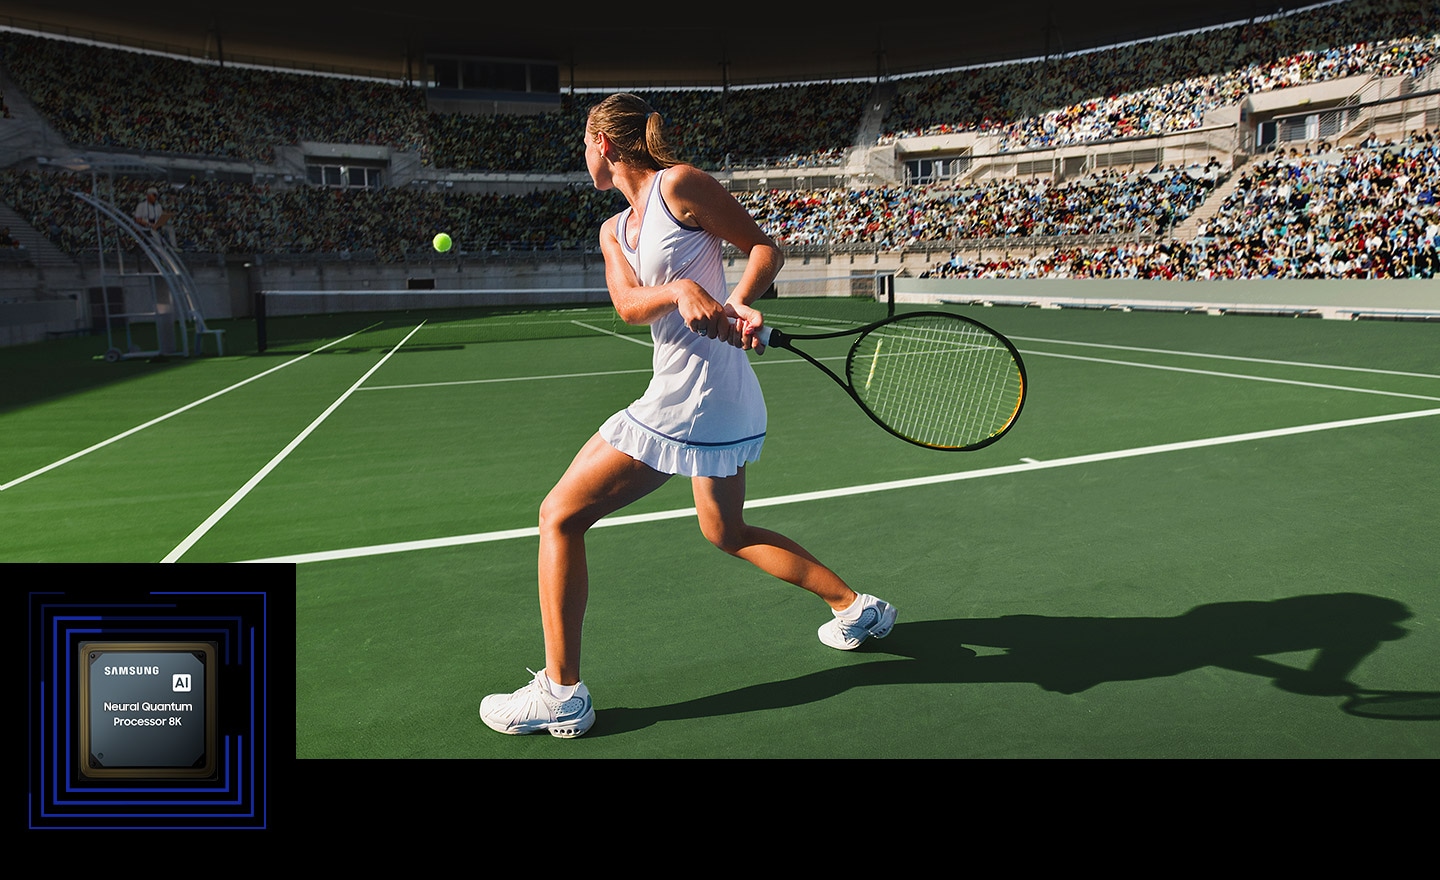 يتم تمييز عناصر مختلفة من مباراة التنس بما في ذلك كرة التنس وملعب التنس الجانبي ومضرب التنس والجمهور على الشاشة. يُظهر قدرة معالج Samsung AI Neural Quantum Processor 8K على تحسين الجودة في الوقت الفعلي.